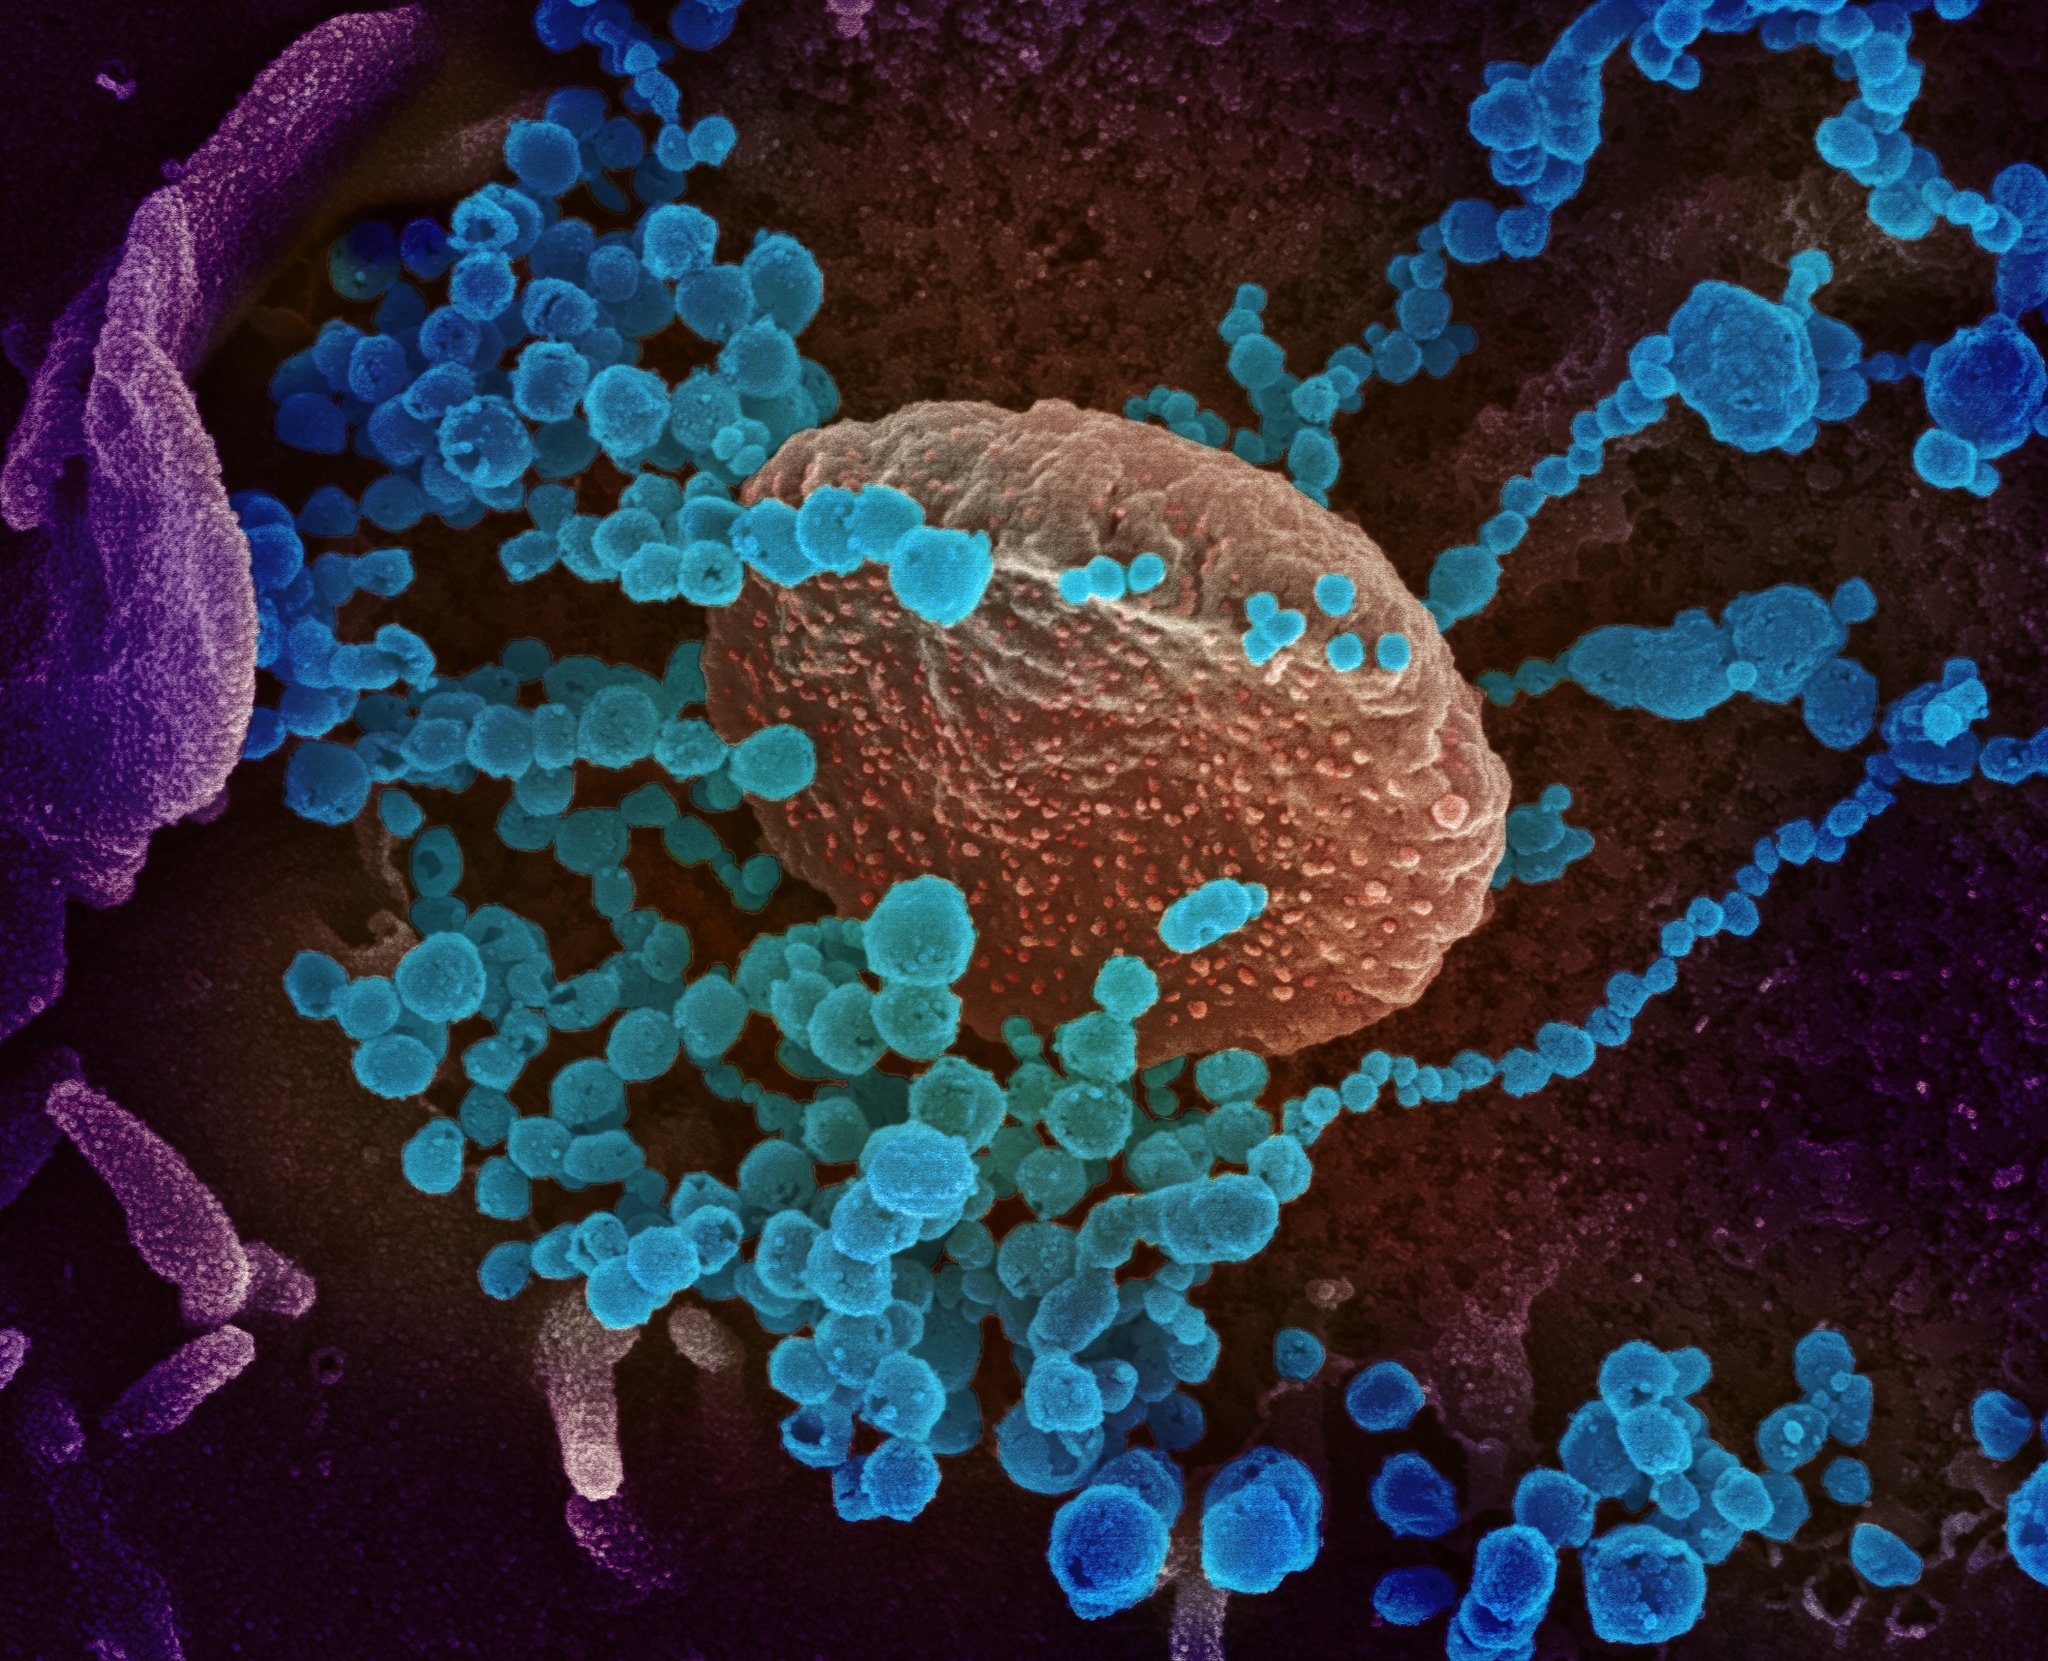 Imagem de microscópio eletrônico de varredura mostra Sars-CoV-2 emergindo da superfície de células cultivadas em laboratório (Foto: NIAID)